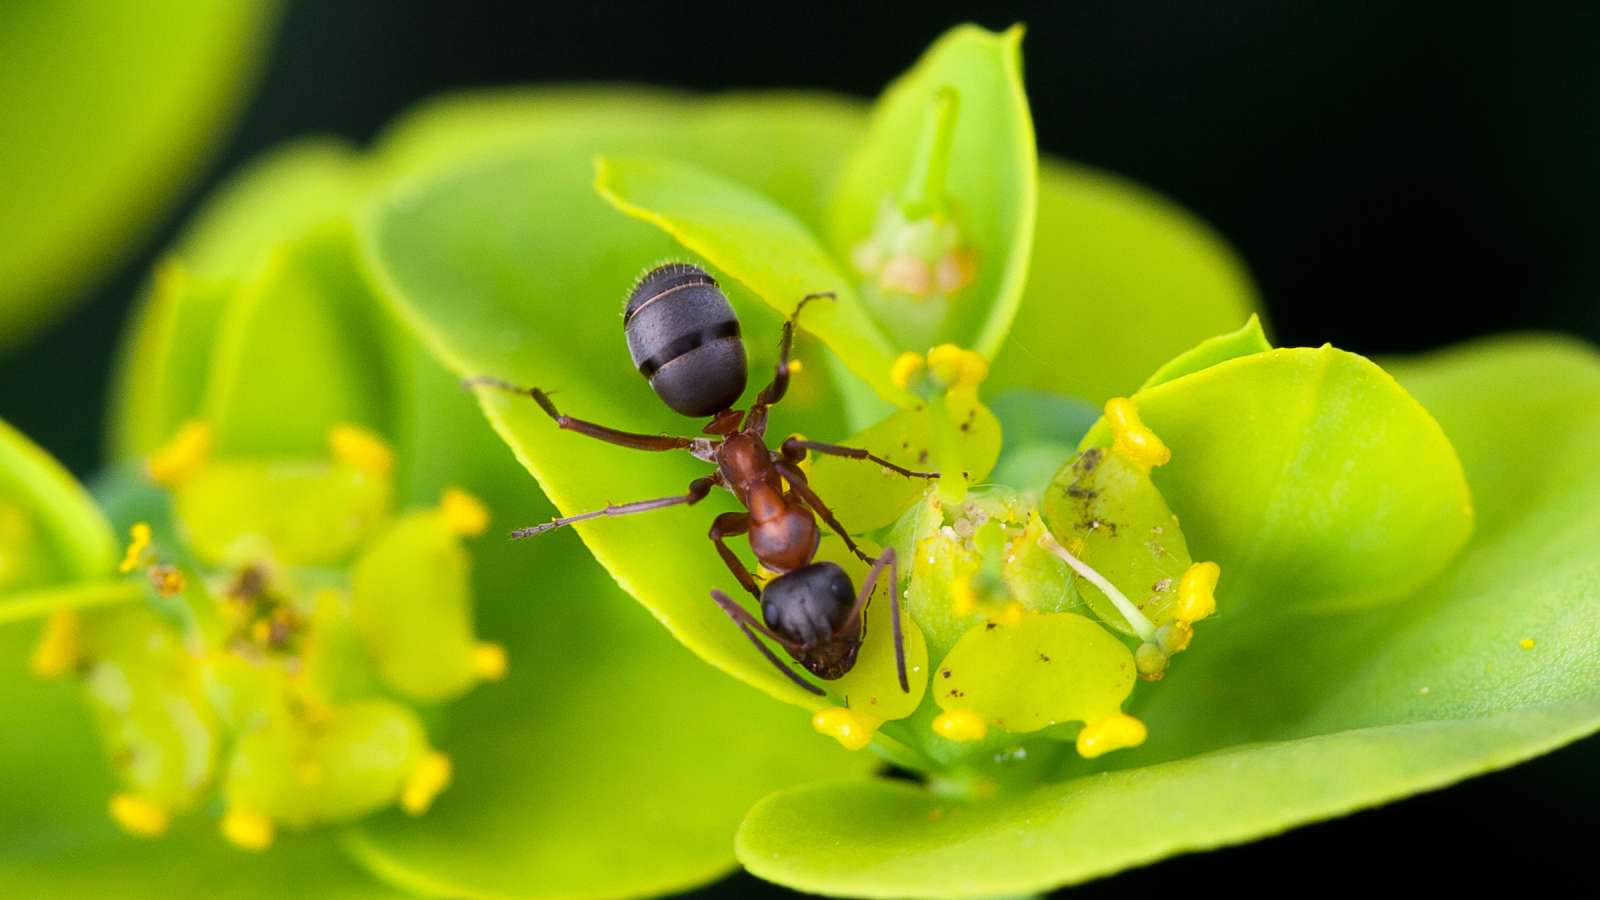 Miten eroon pihamaan muurahaisista?